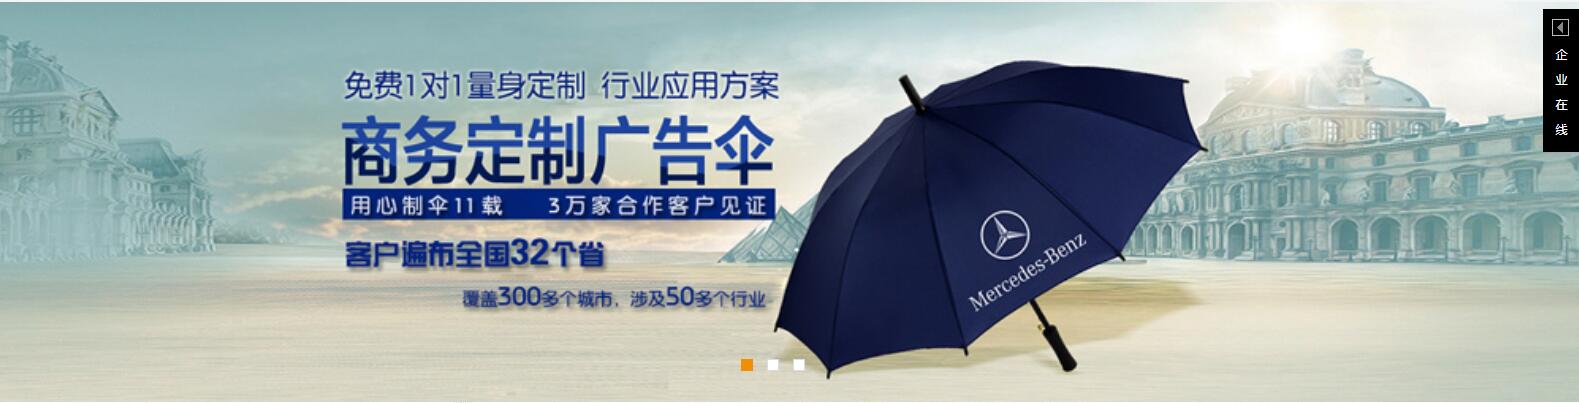 太阳伞供应商、长沙雨伞厂、嘉鸿雨伞定制logo